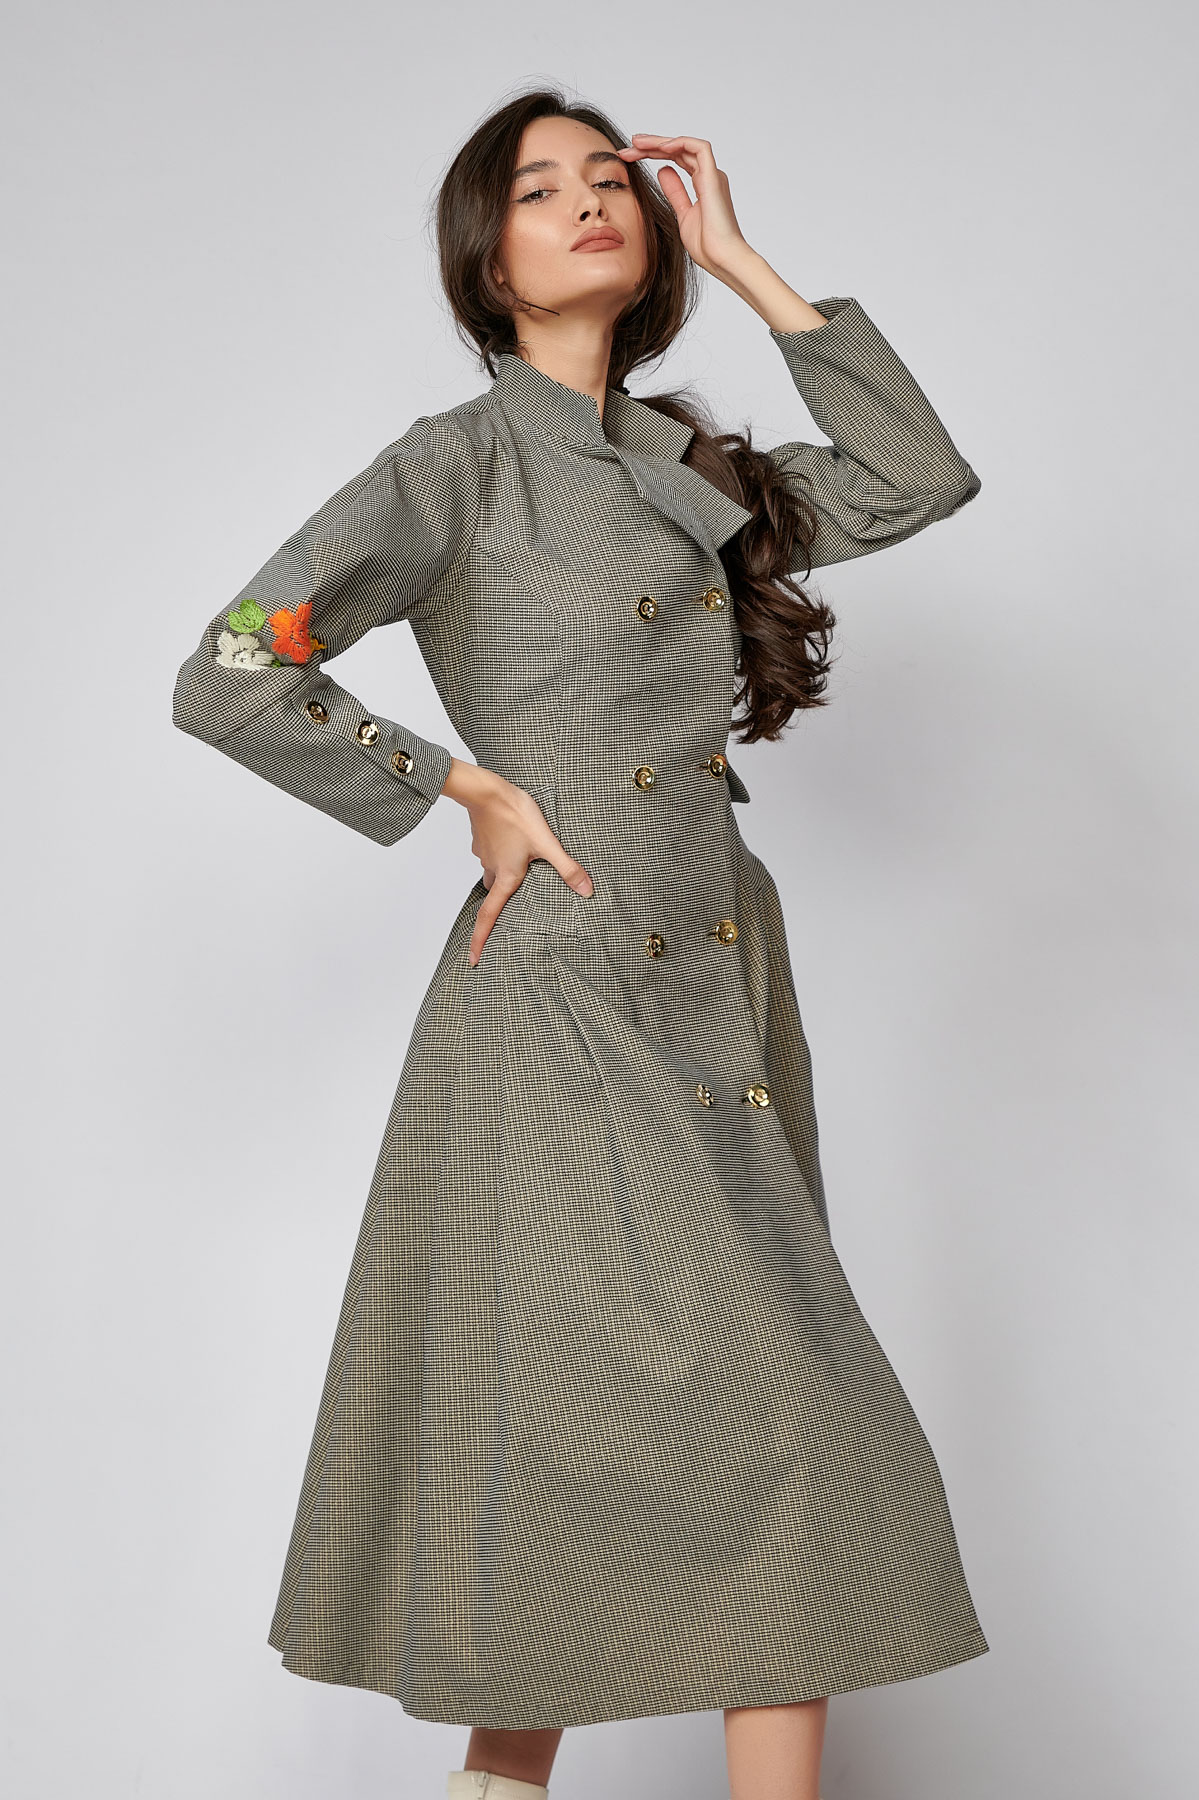 MILENA Dress. Natural fabrics, original design, handmade embroidery